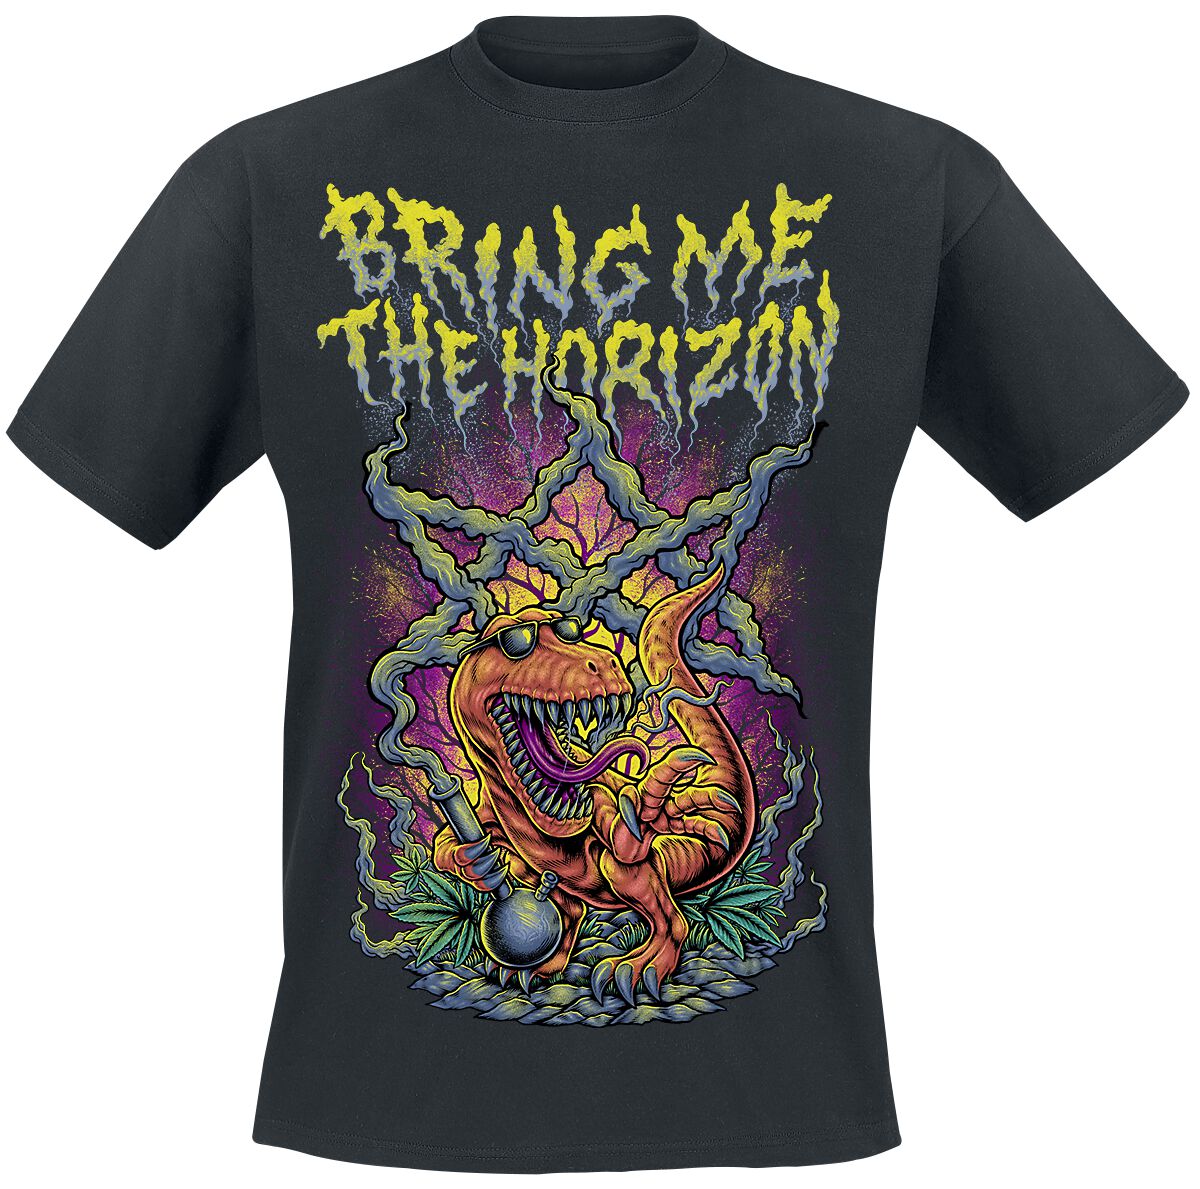 Bring Me The Horizon T-Shirt - Smoking Dinosaur - S bis XXL - für Männer - Größe XXL - schwarz  - Lizenziertes Merchandise!